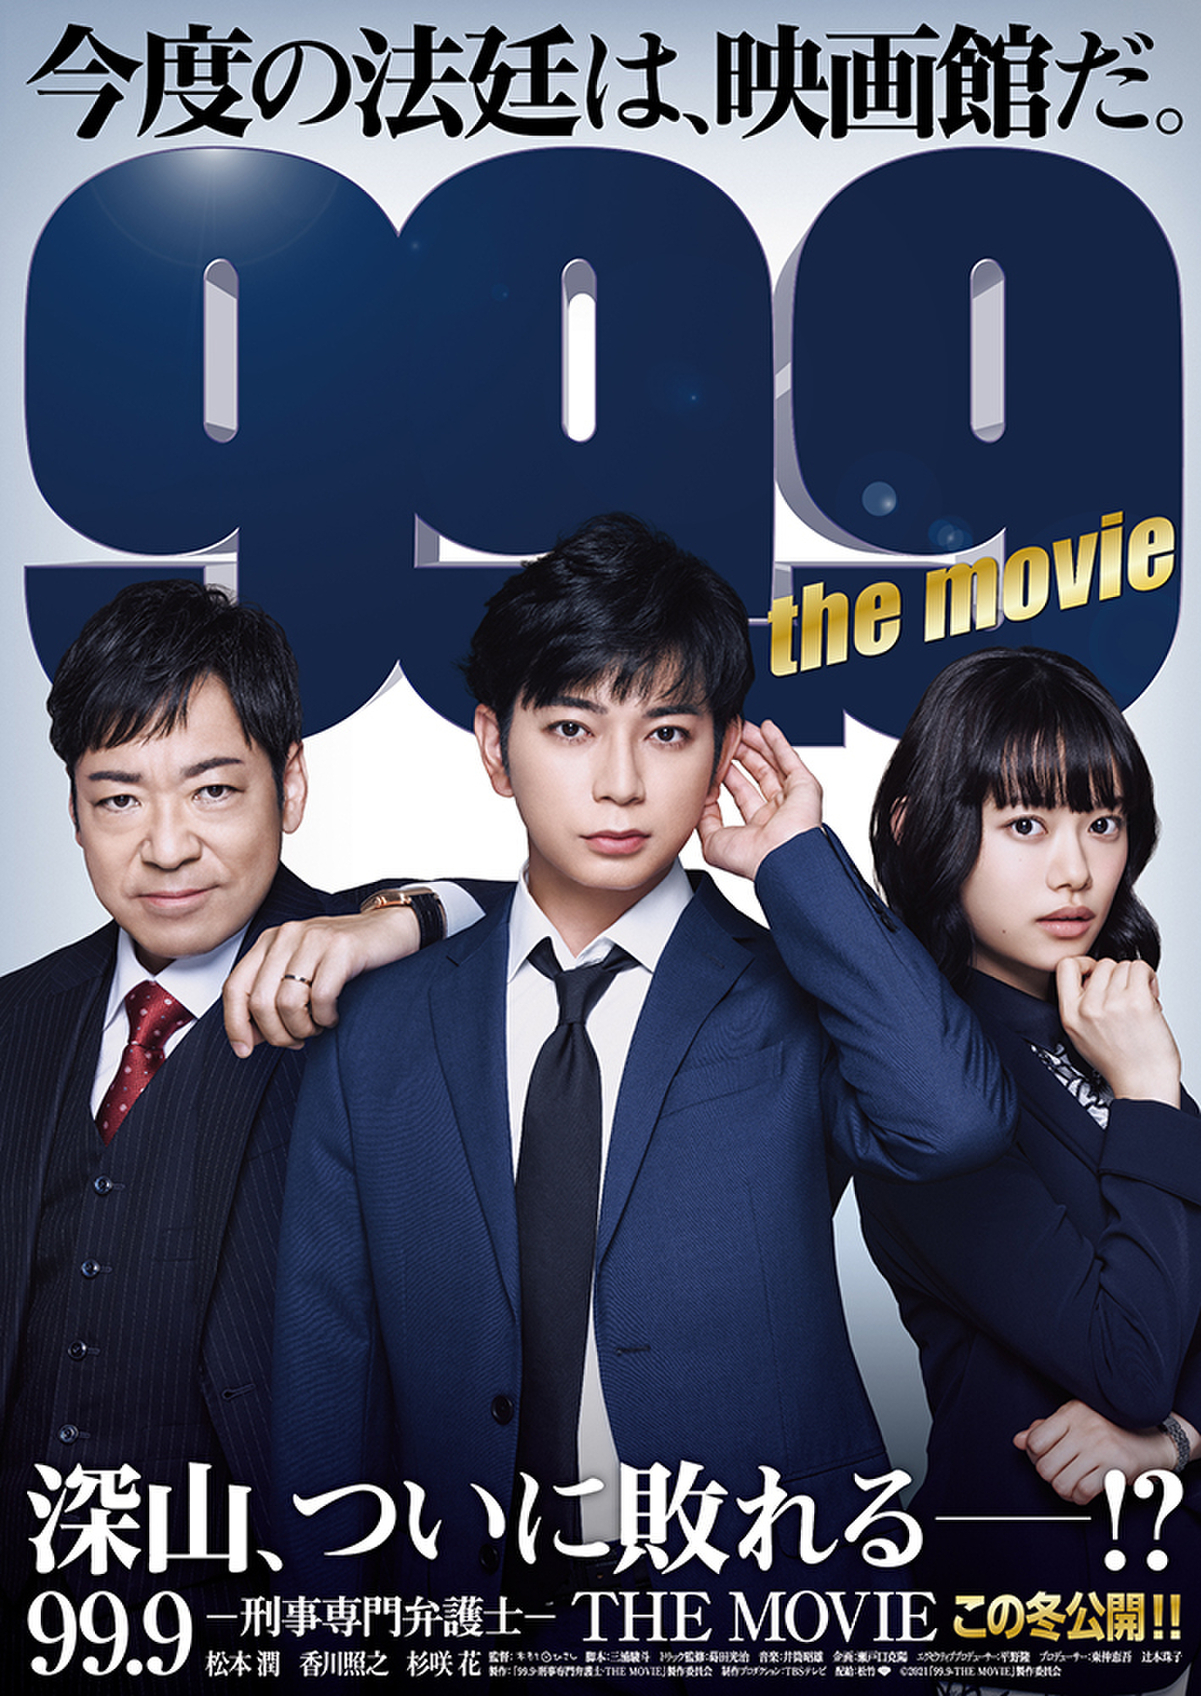 99.9-刑事専門弁護士- SEASONⅡ Blu-ray BOX〈7枚組〉 - 日本映画